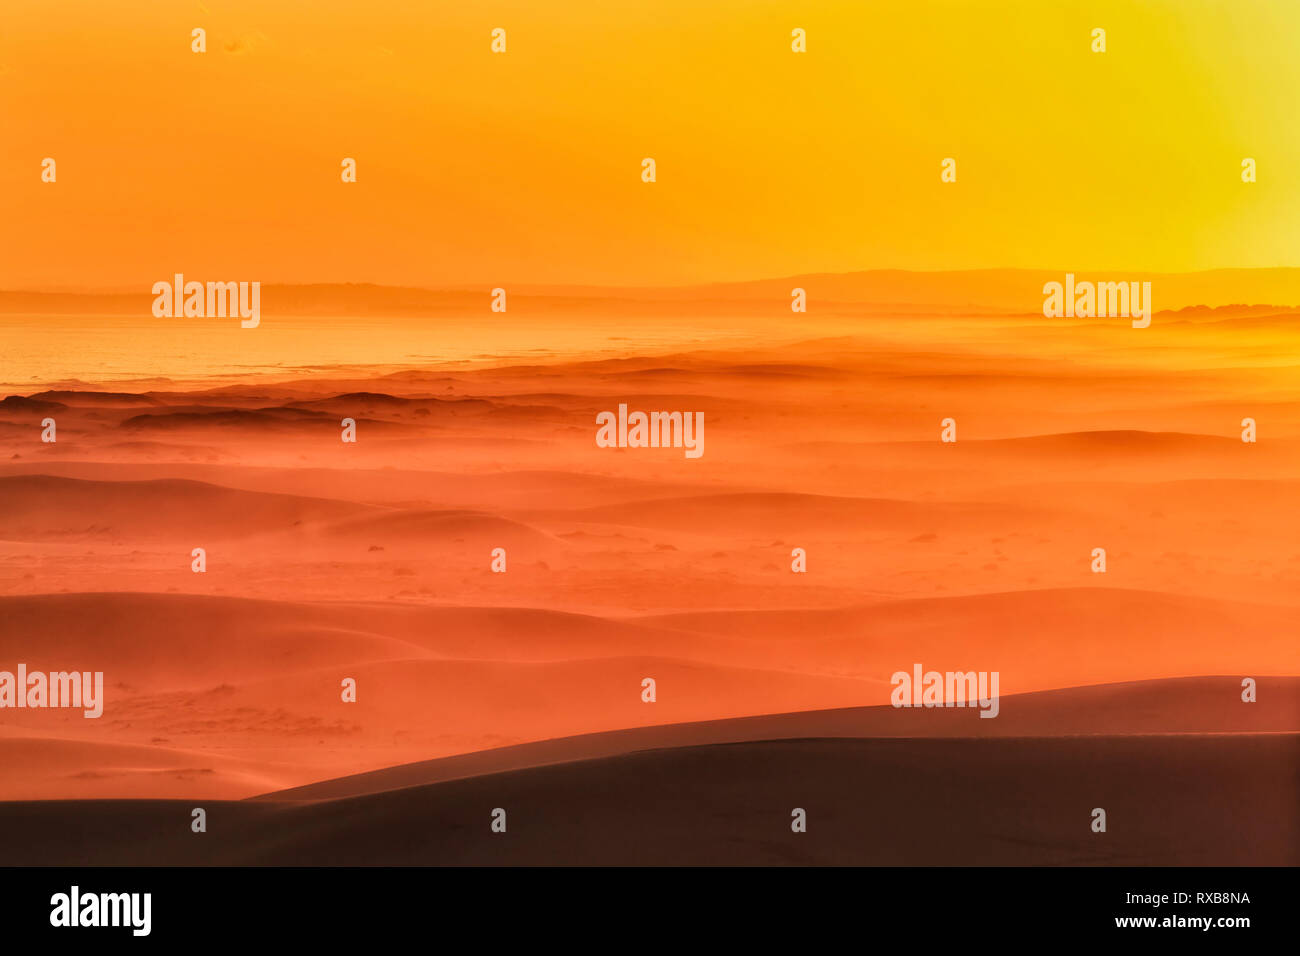 Orange et jaune chaud lumière du soleil au coucher du soleil plus de Stockton Beach côte pacifique de l'Australie sur les vagues de dunes de sable. Banque D'Images